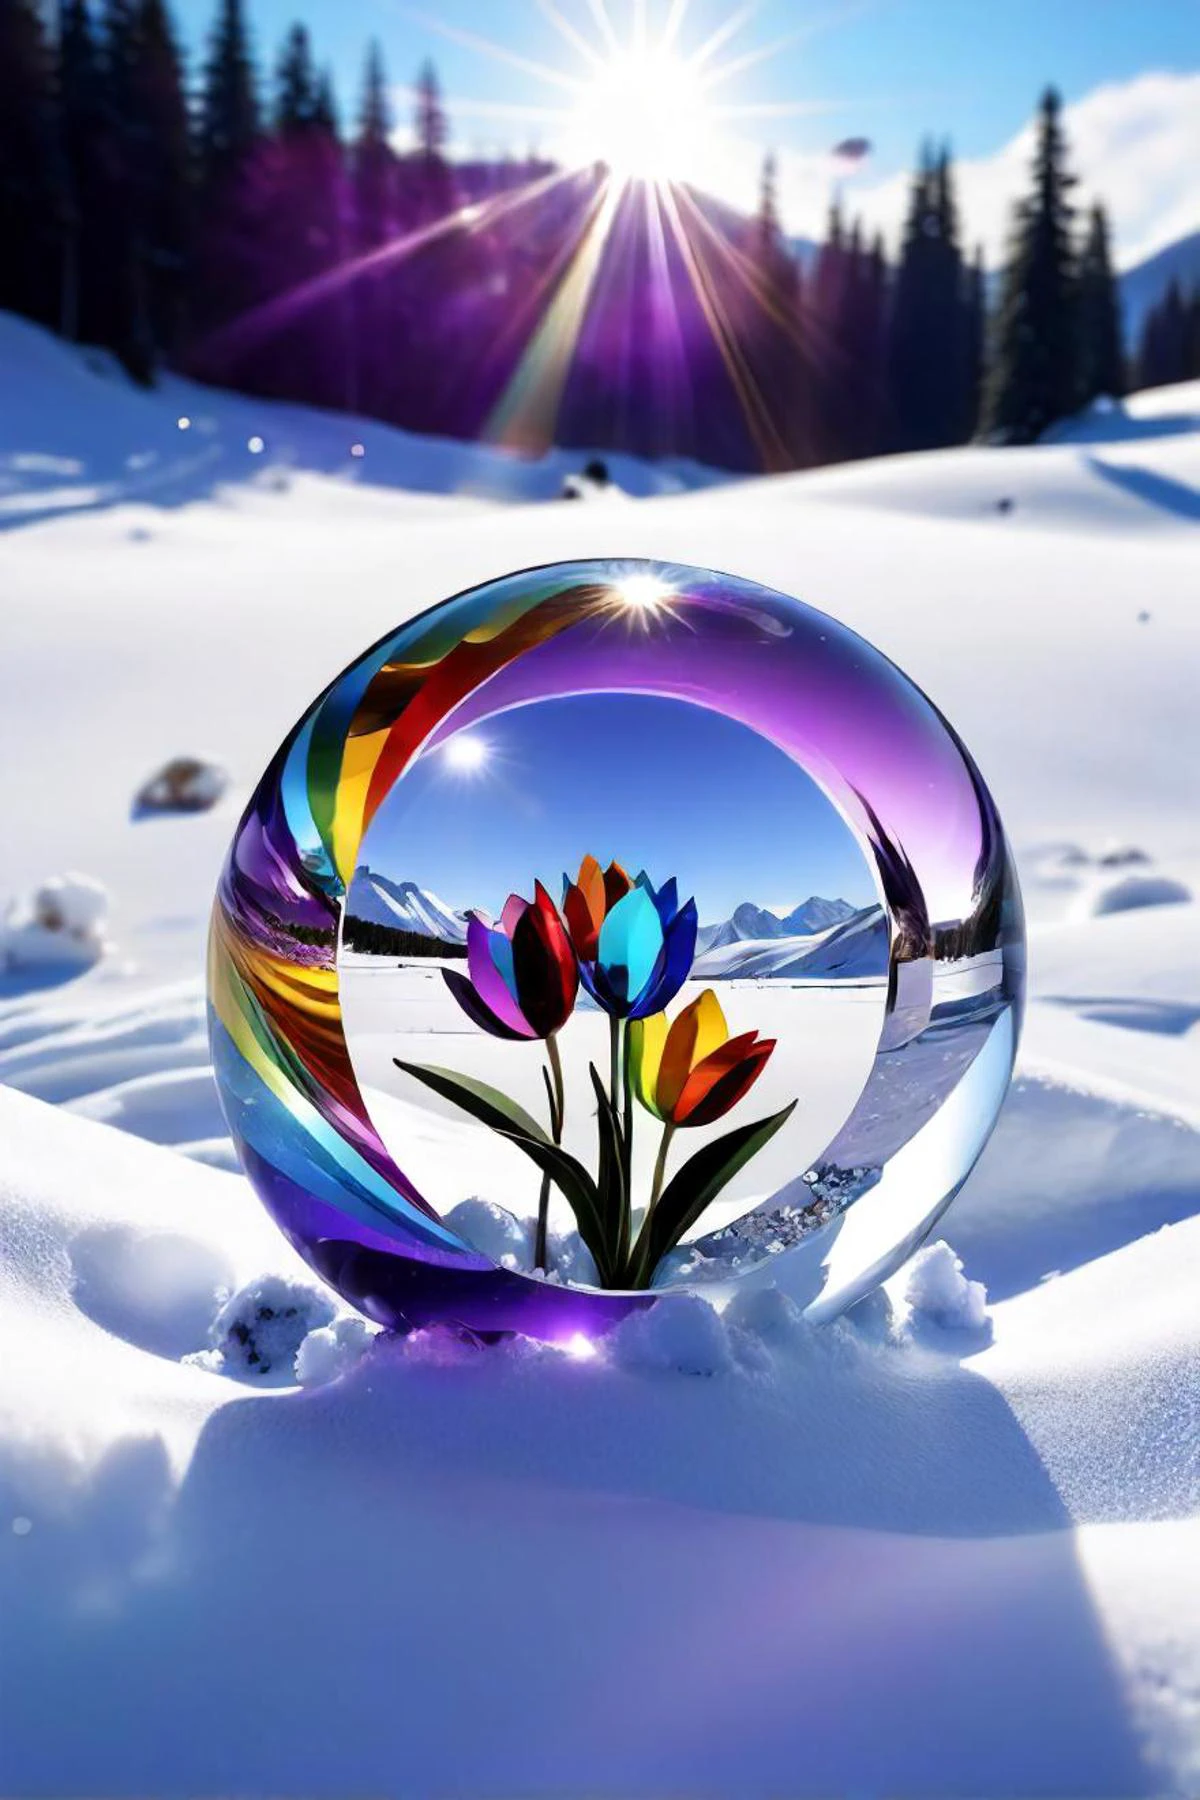 фиолетовый крок на снегу с радугой на заднем плане, изображение с трассировкой лучей, автор: Игорь Зенин, победитель конкурса pixabay, хрустальный кубизм, красивые цветы и кристаллы, стеклянные цветы, Красочное искусство из стекла